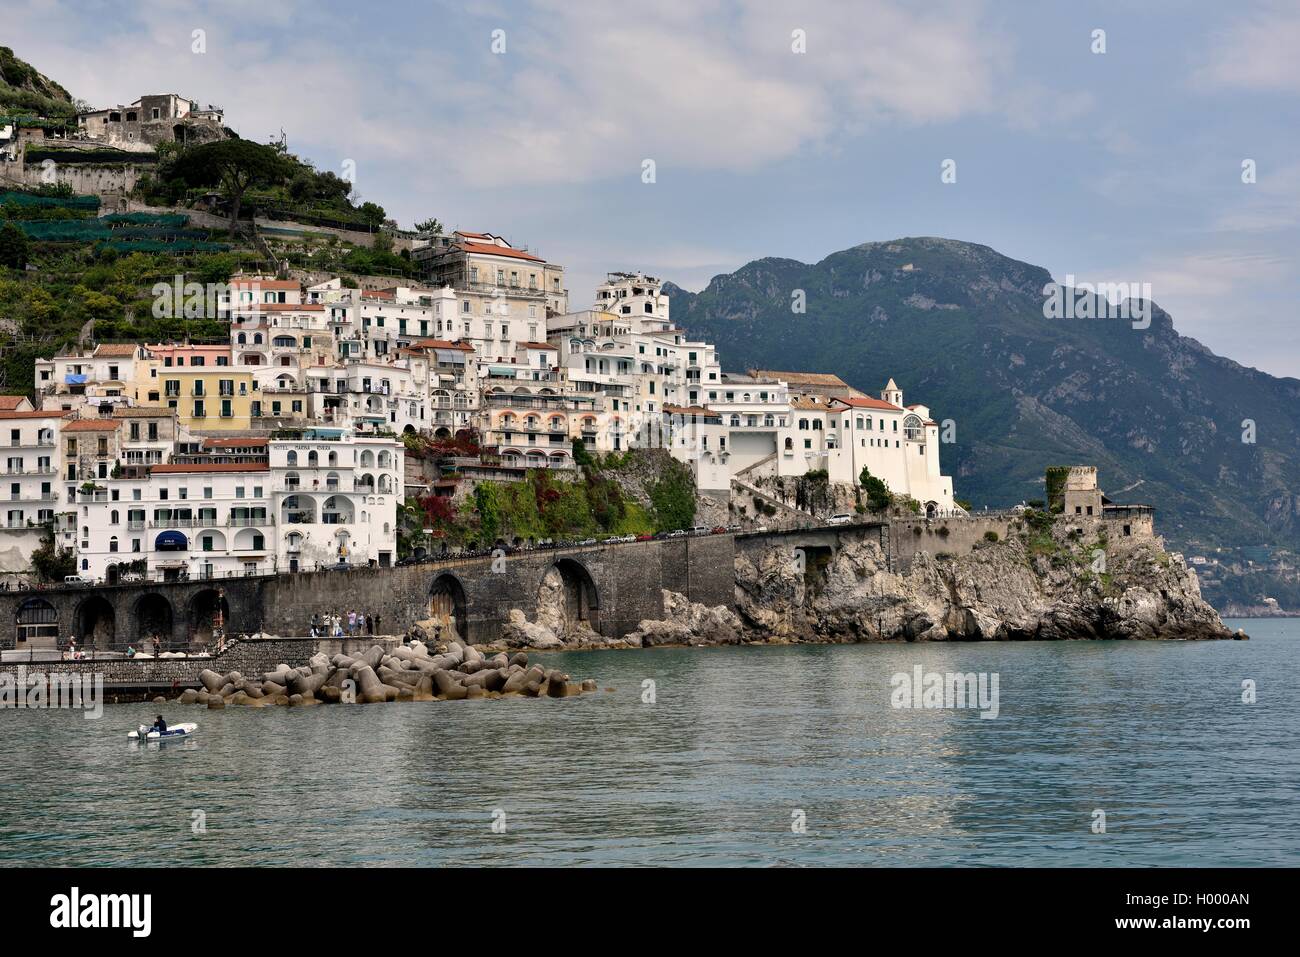 Vista de Amalfi, Costa de Amalfi, Costiera Amalfitana, provincia de Salerno, Región de Campania, Italia Foto de stock